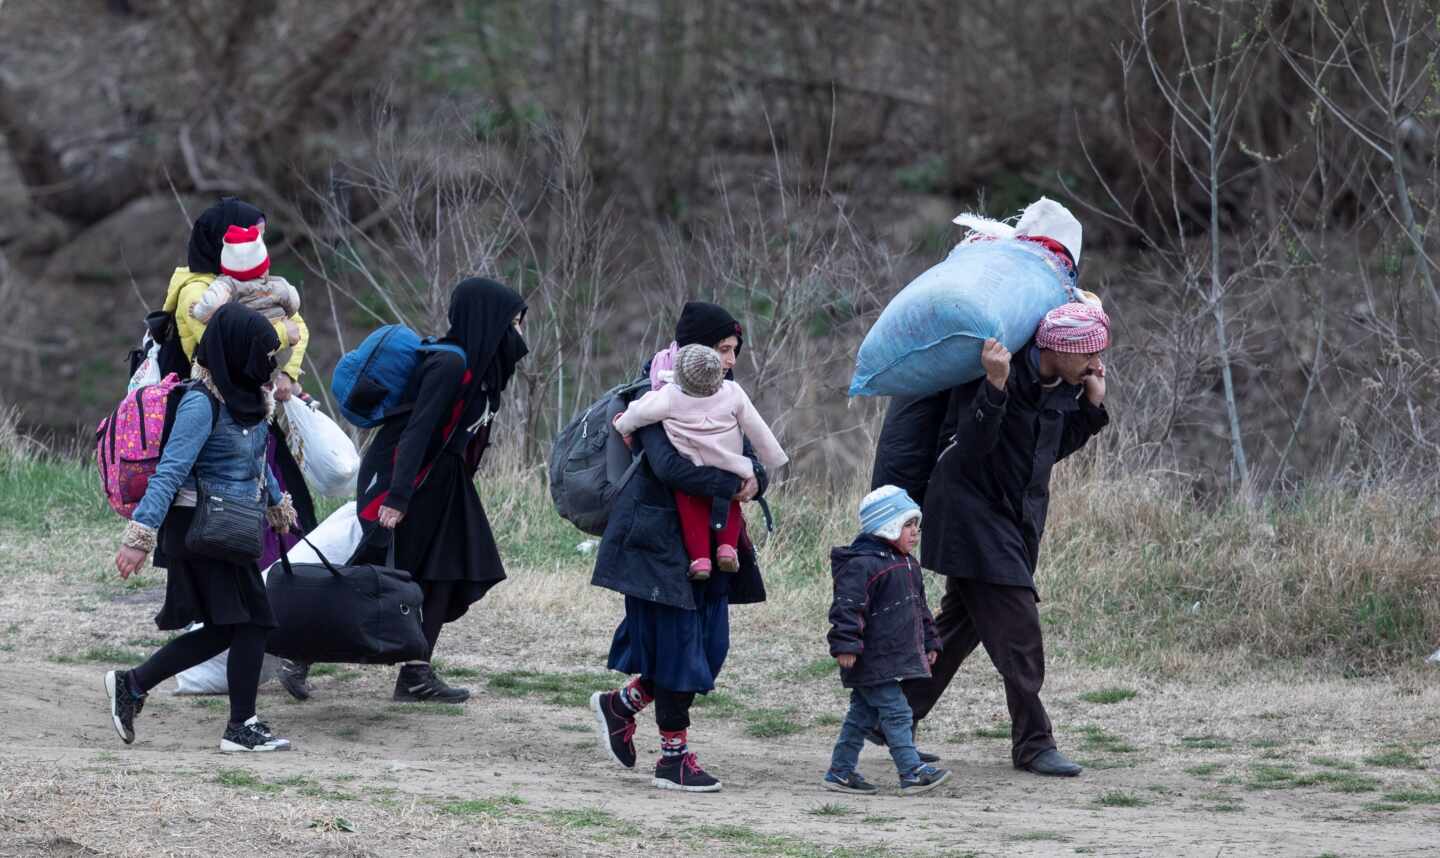 Siete países de la UE se comprometen a aceptar a 1.600 niños migrantes de los campamentos en Grecia